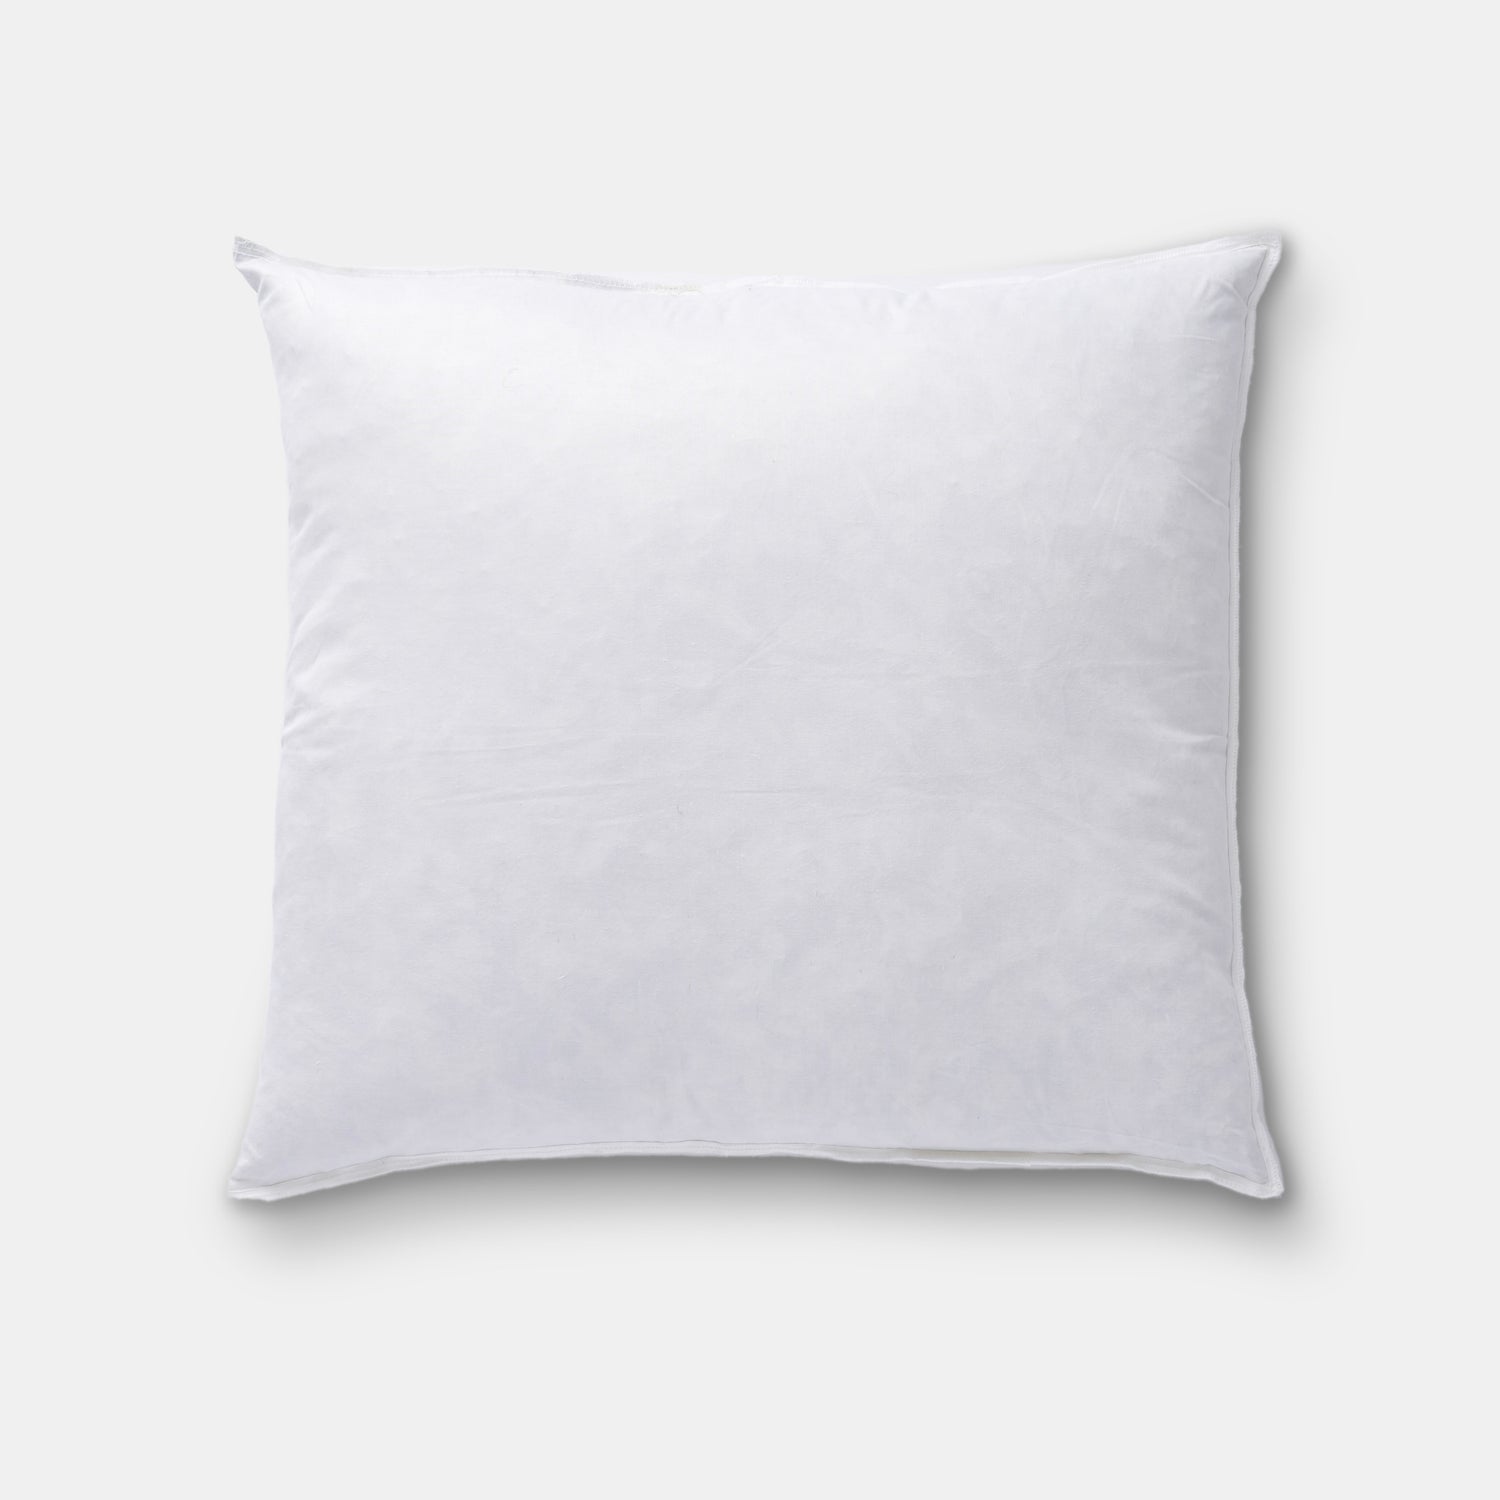 Pillow Insert - 18” x 18&quot;